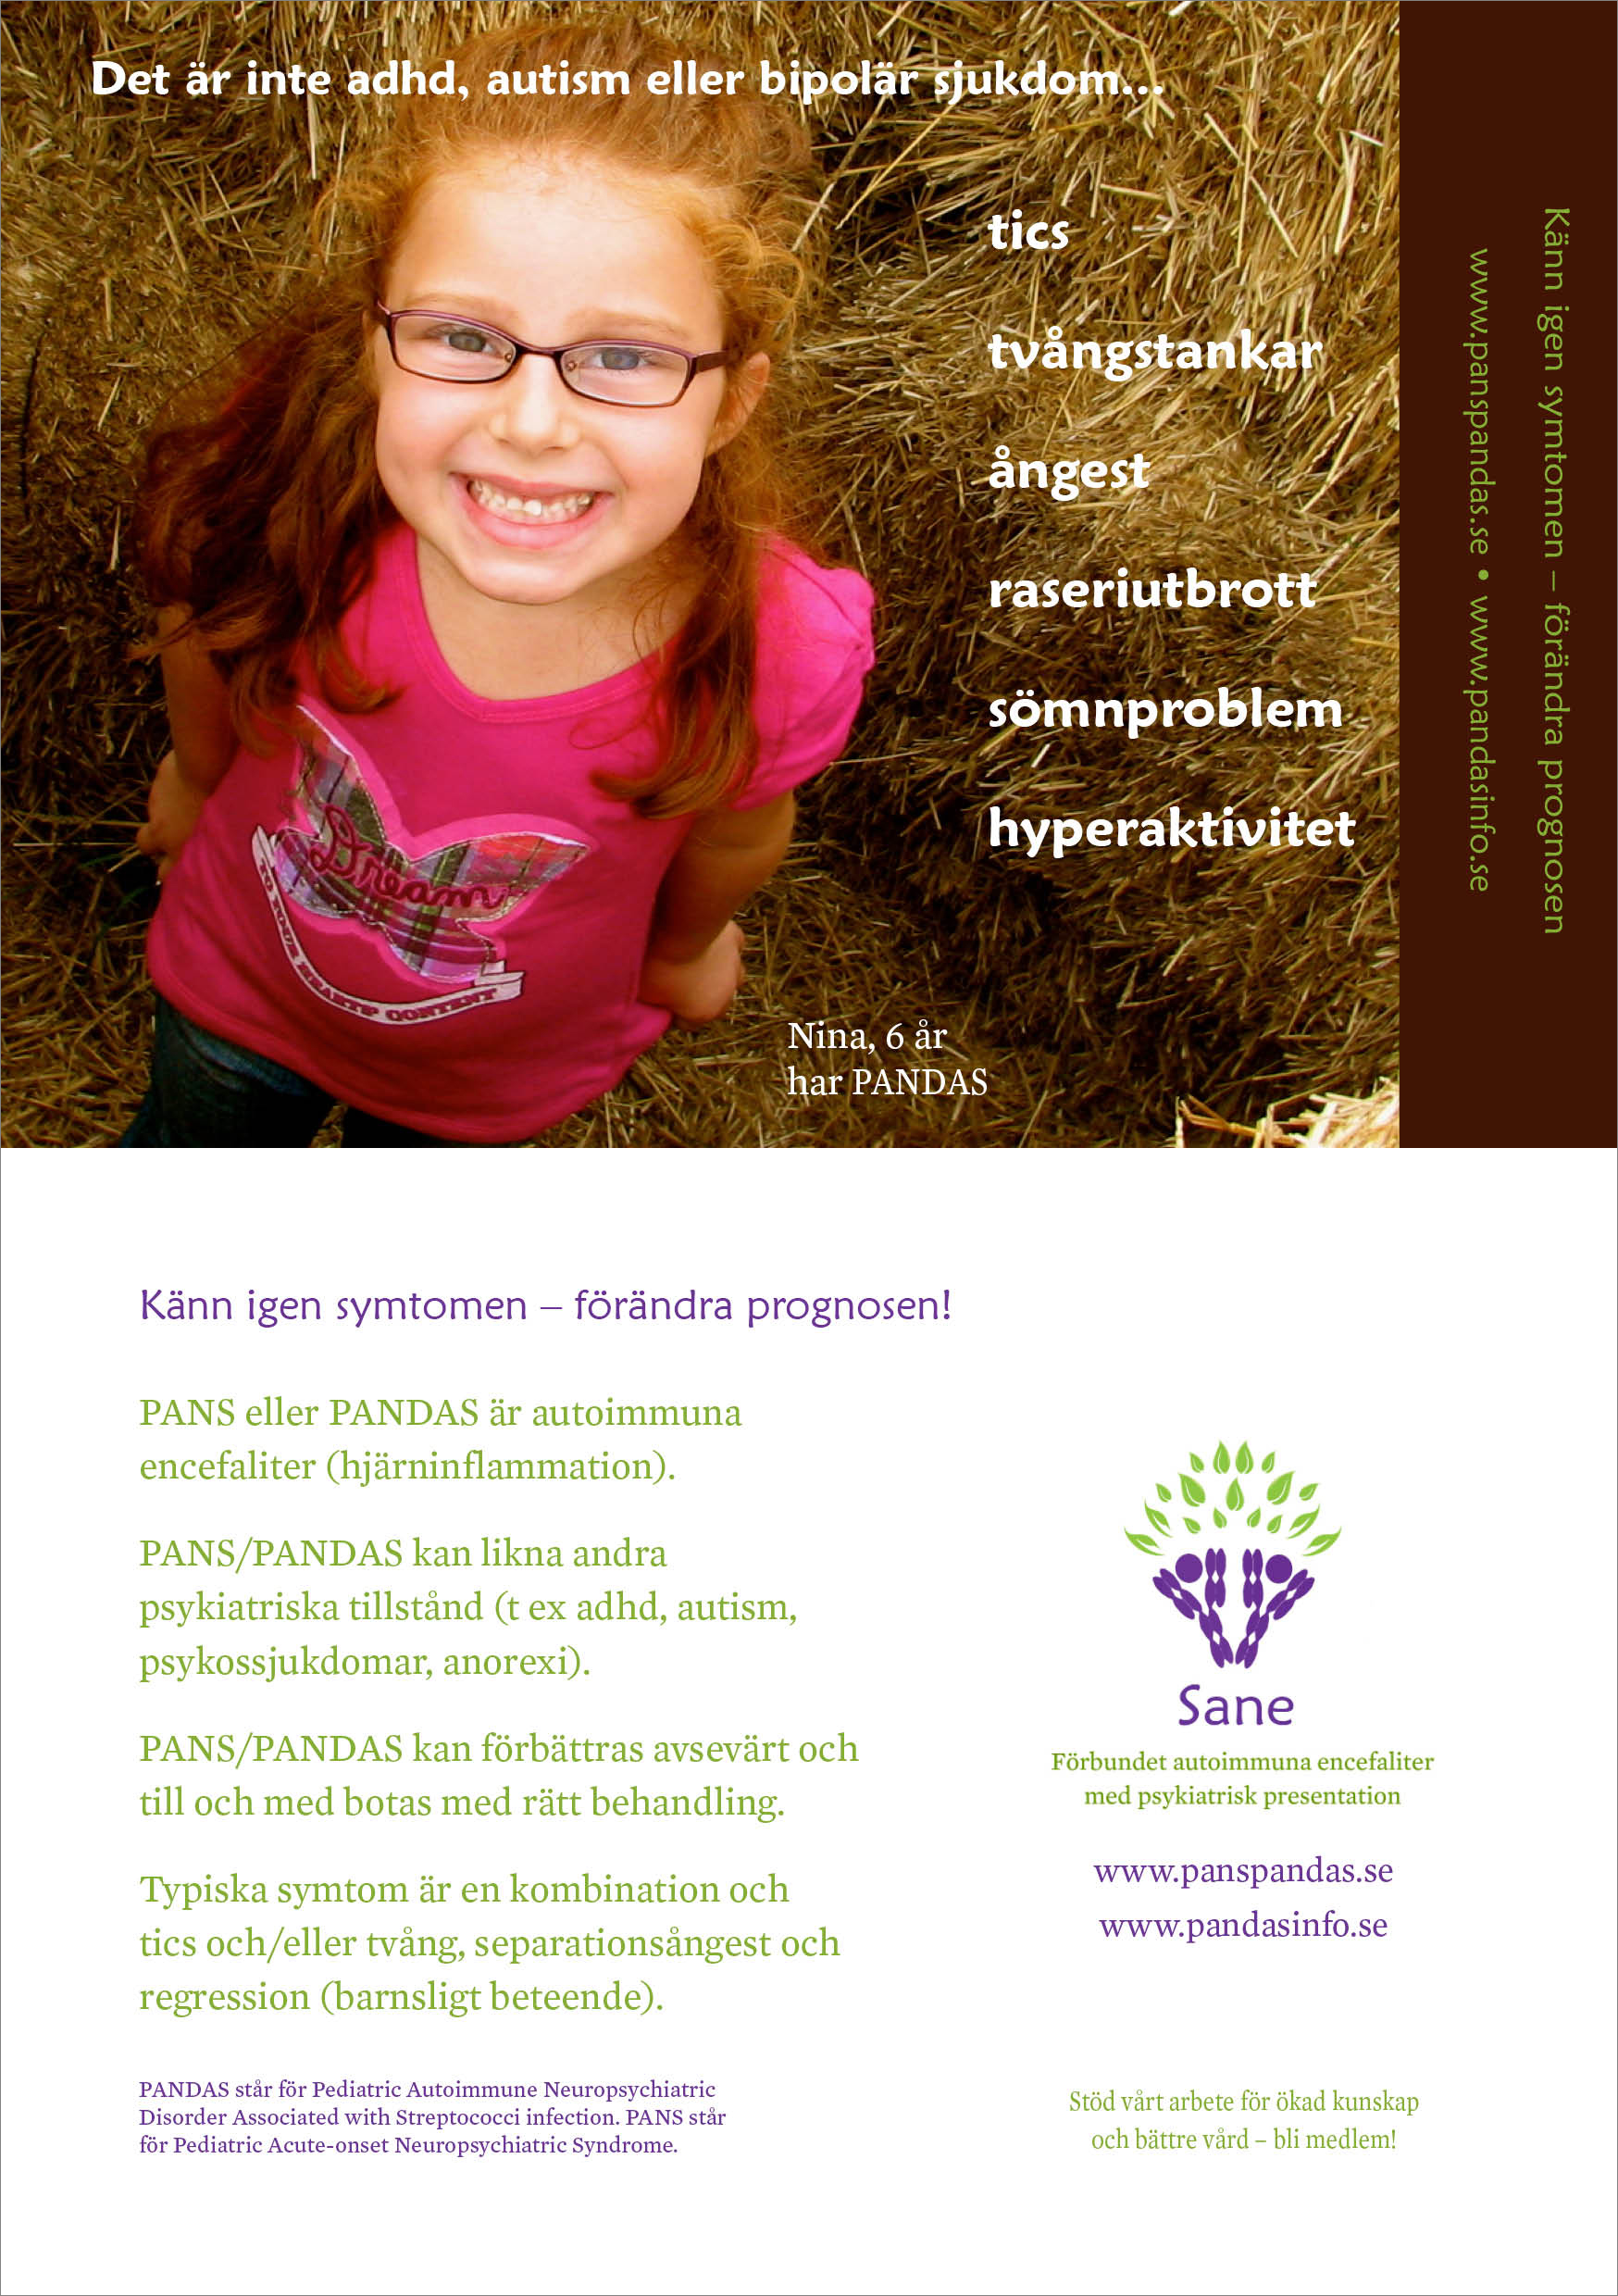 Bild på sexårig flicka, informationstext om PANS